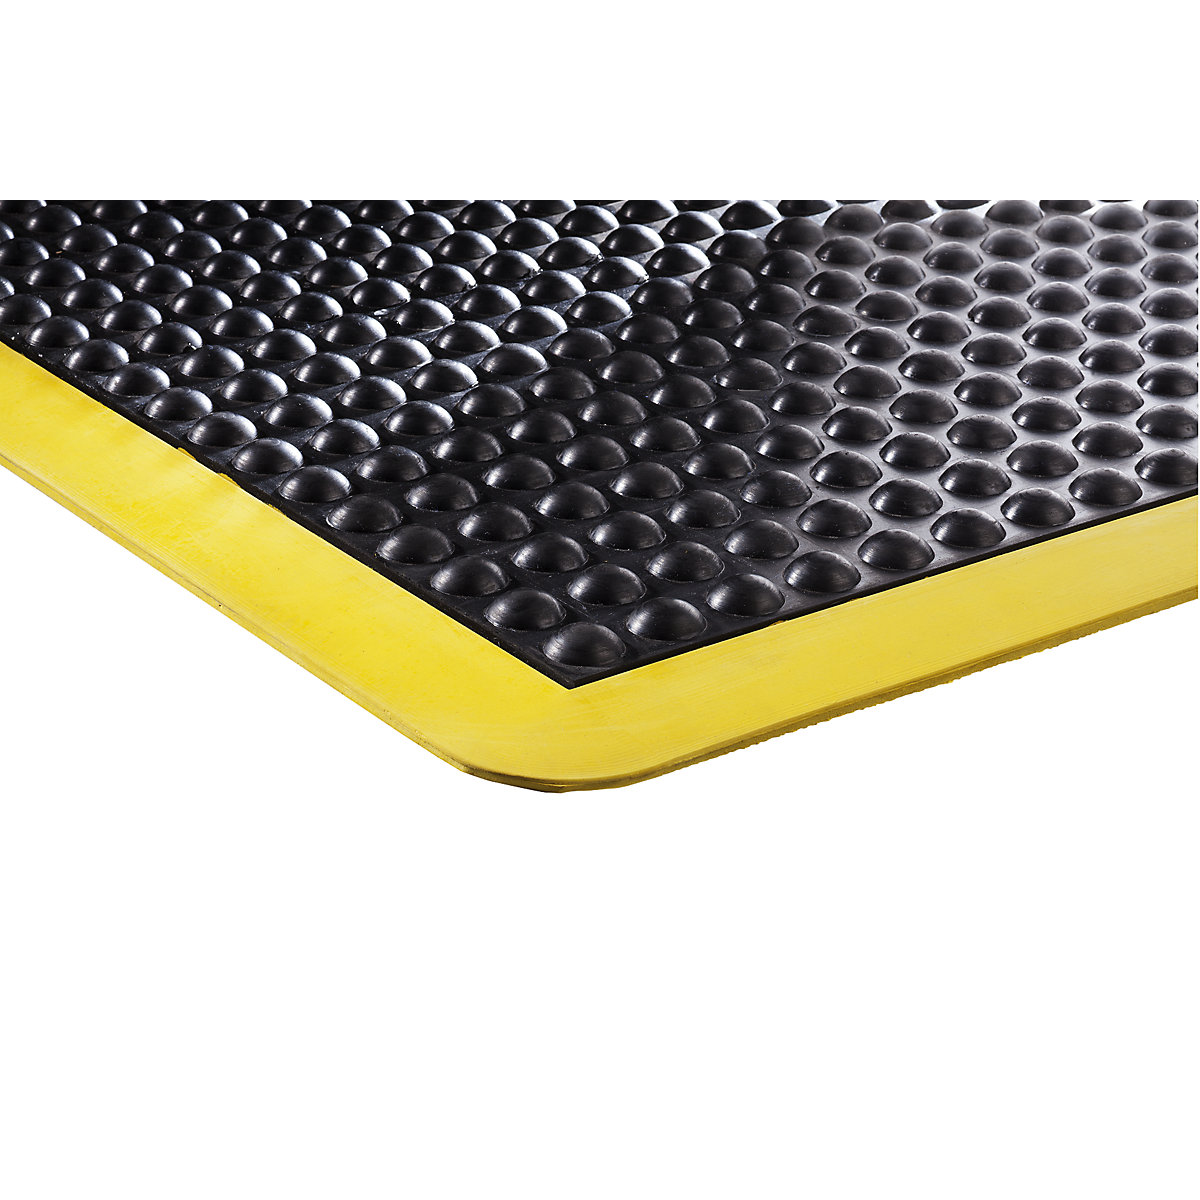 Esteira anticansaço Bubblemat safety – COBA, CxLxA 900 x 600 x 14 mm, preto/amarelo, elemento inicial/final-1